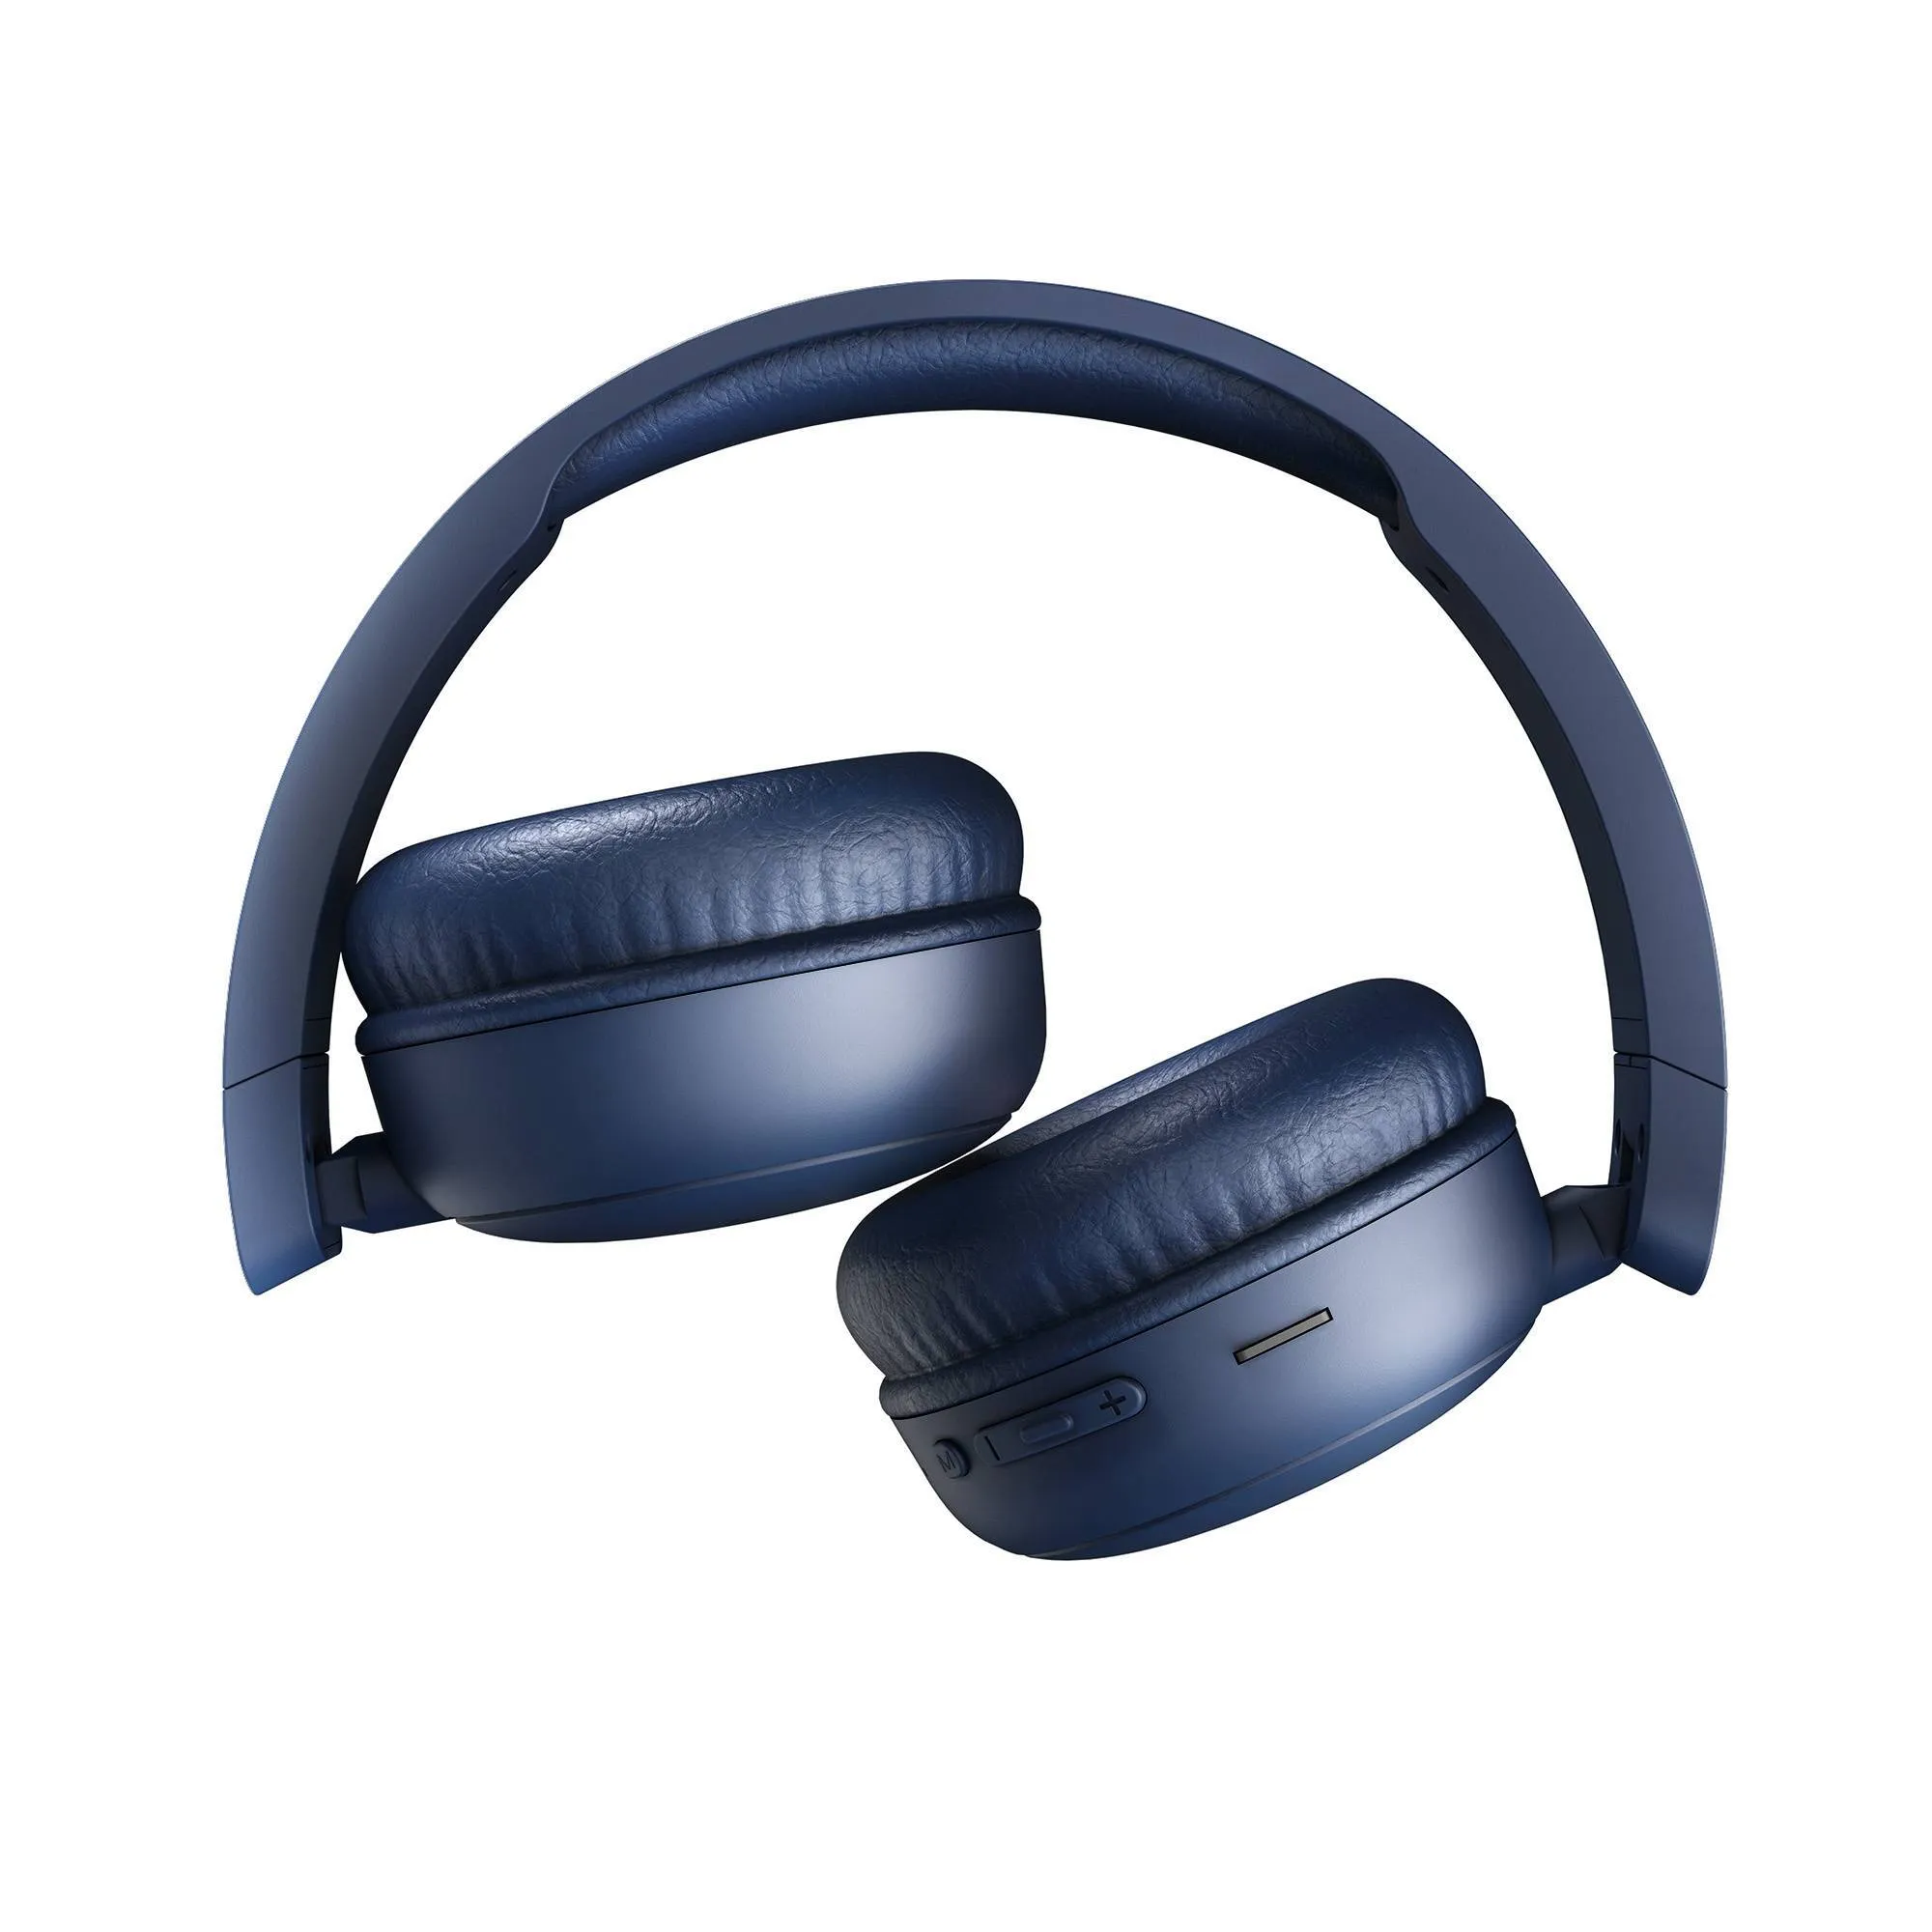 Ausziehbare Radio Color indigo-Kopfhörer mit Klappmechanismus für mehr Komfort.